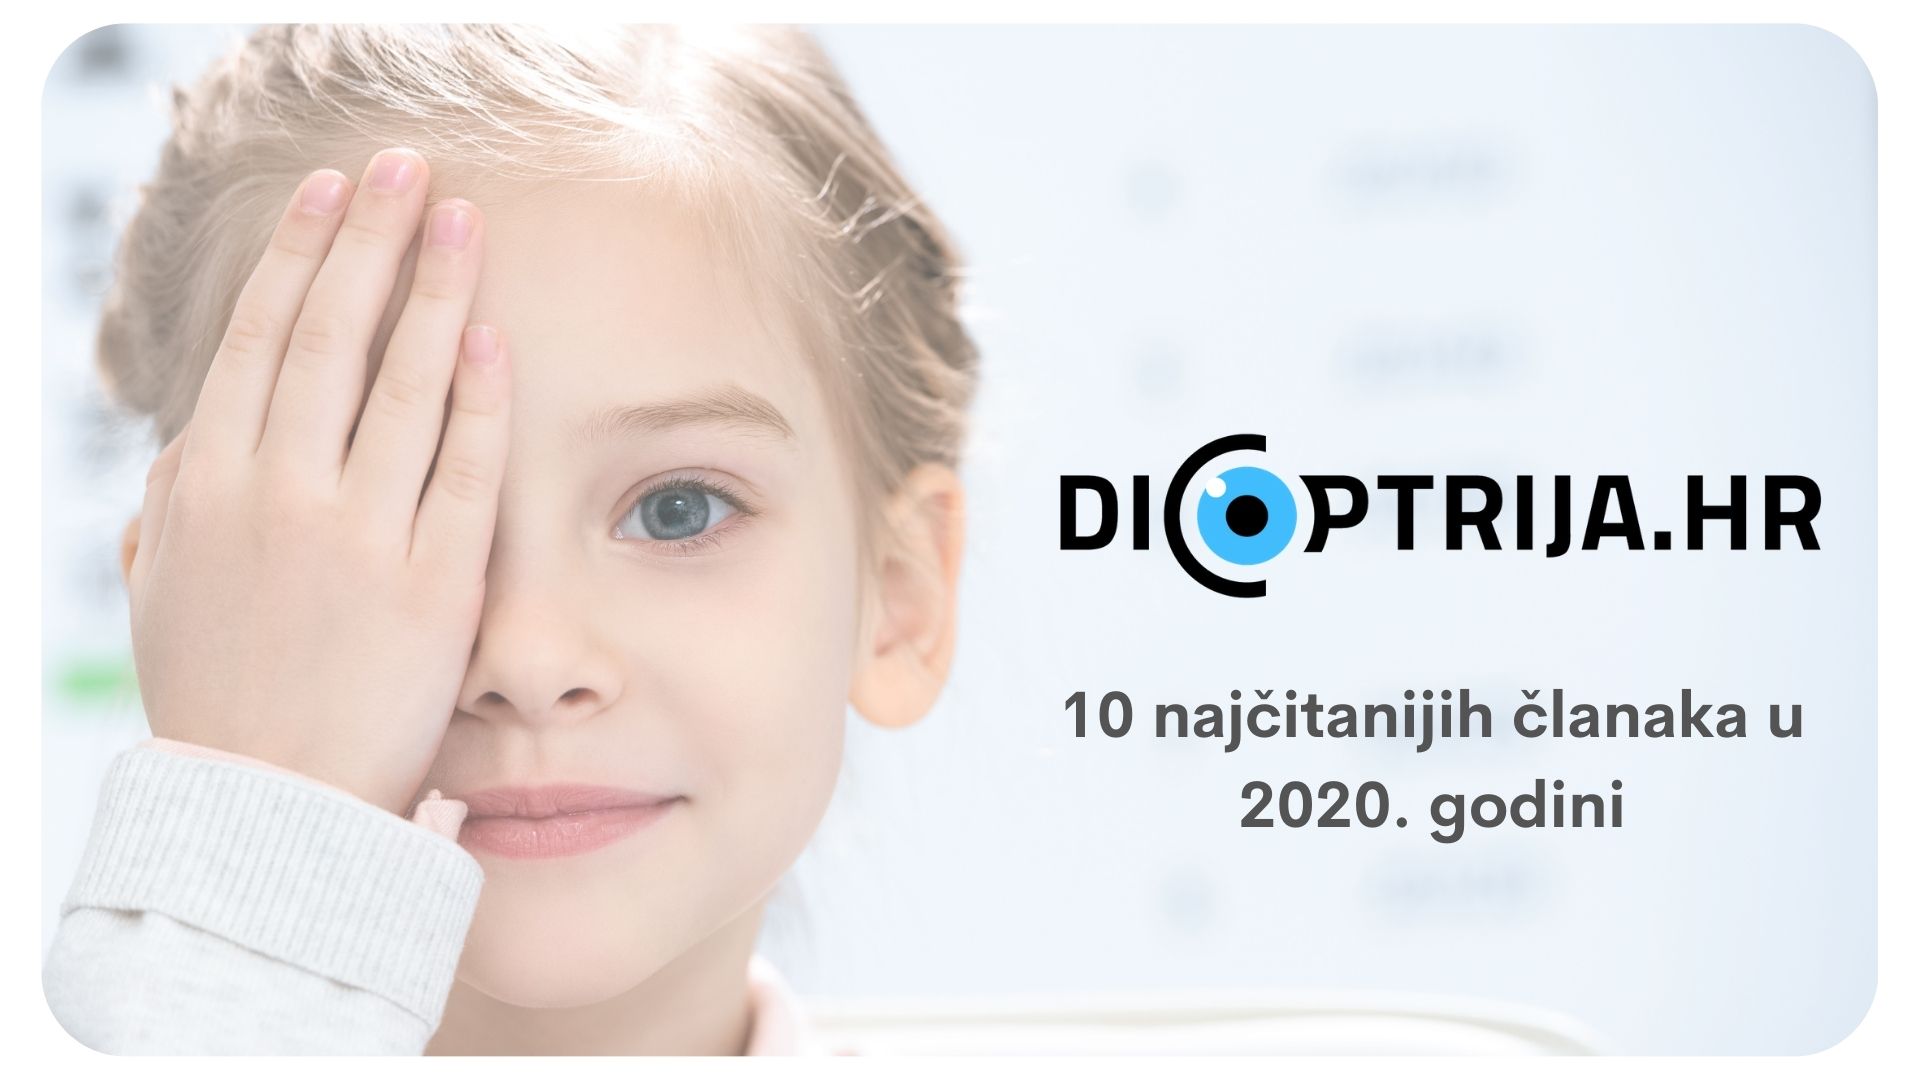 10 članaka s Dioptrija.hr koje ste najviše čitali u 2020. godini